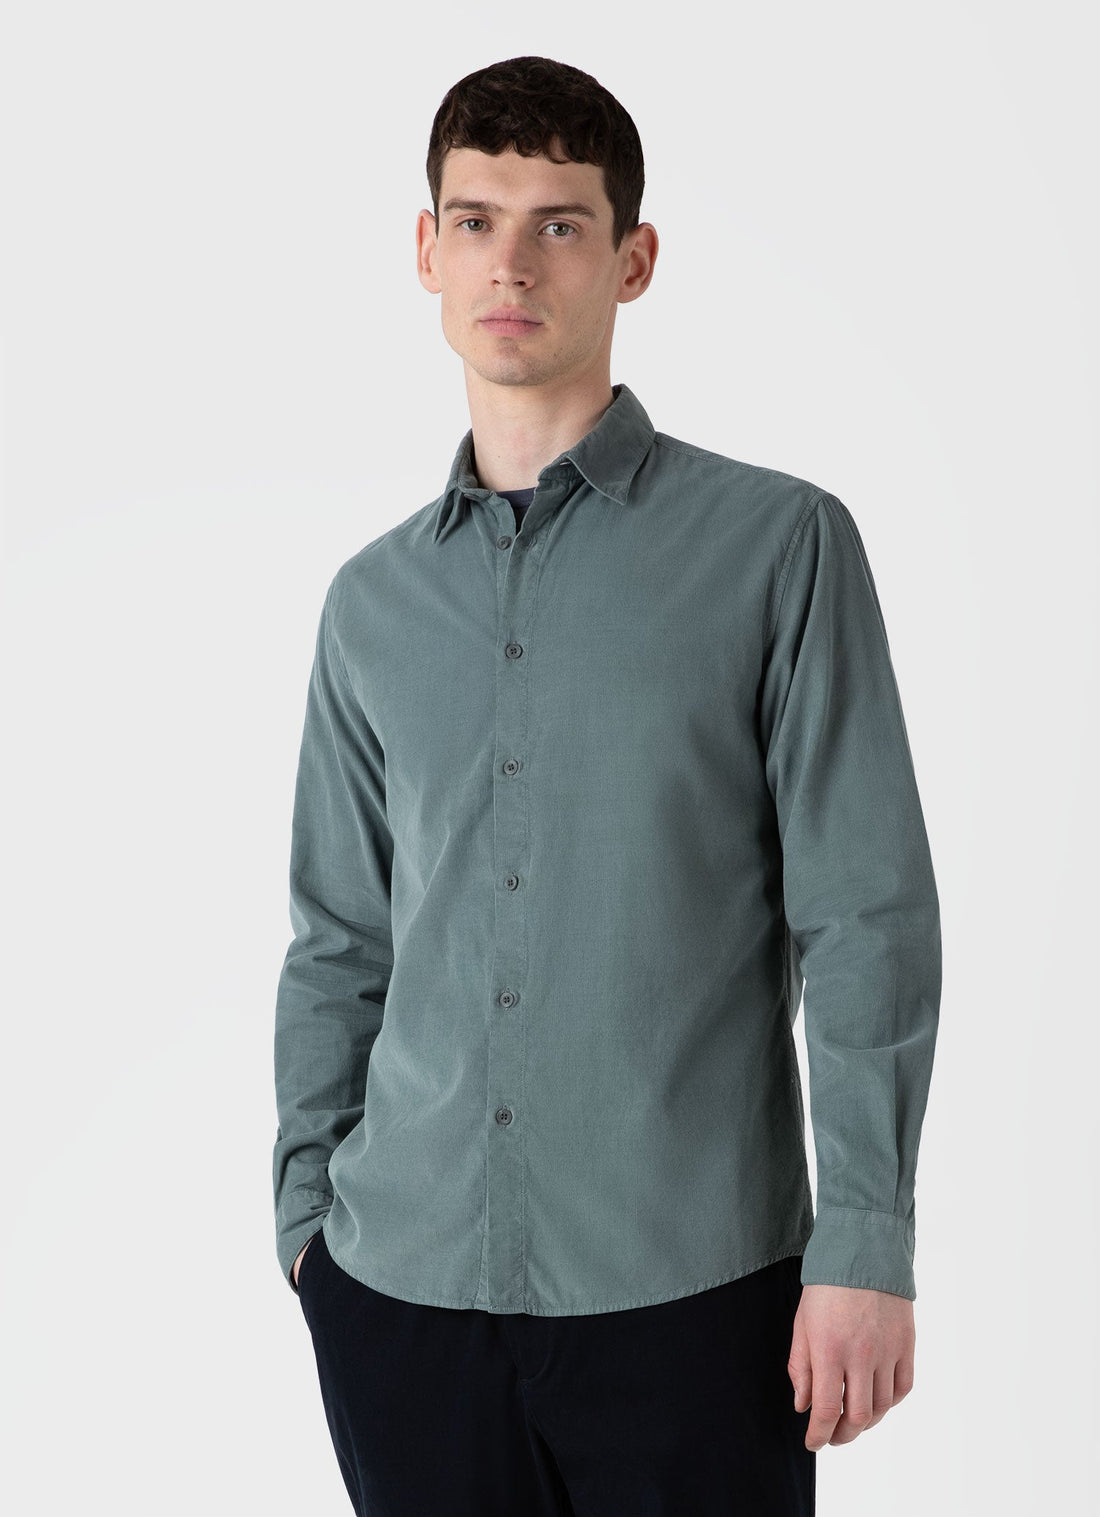 Men's Fine Cord Shirt in Smoke Green